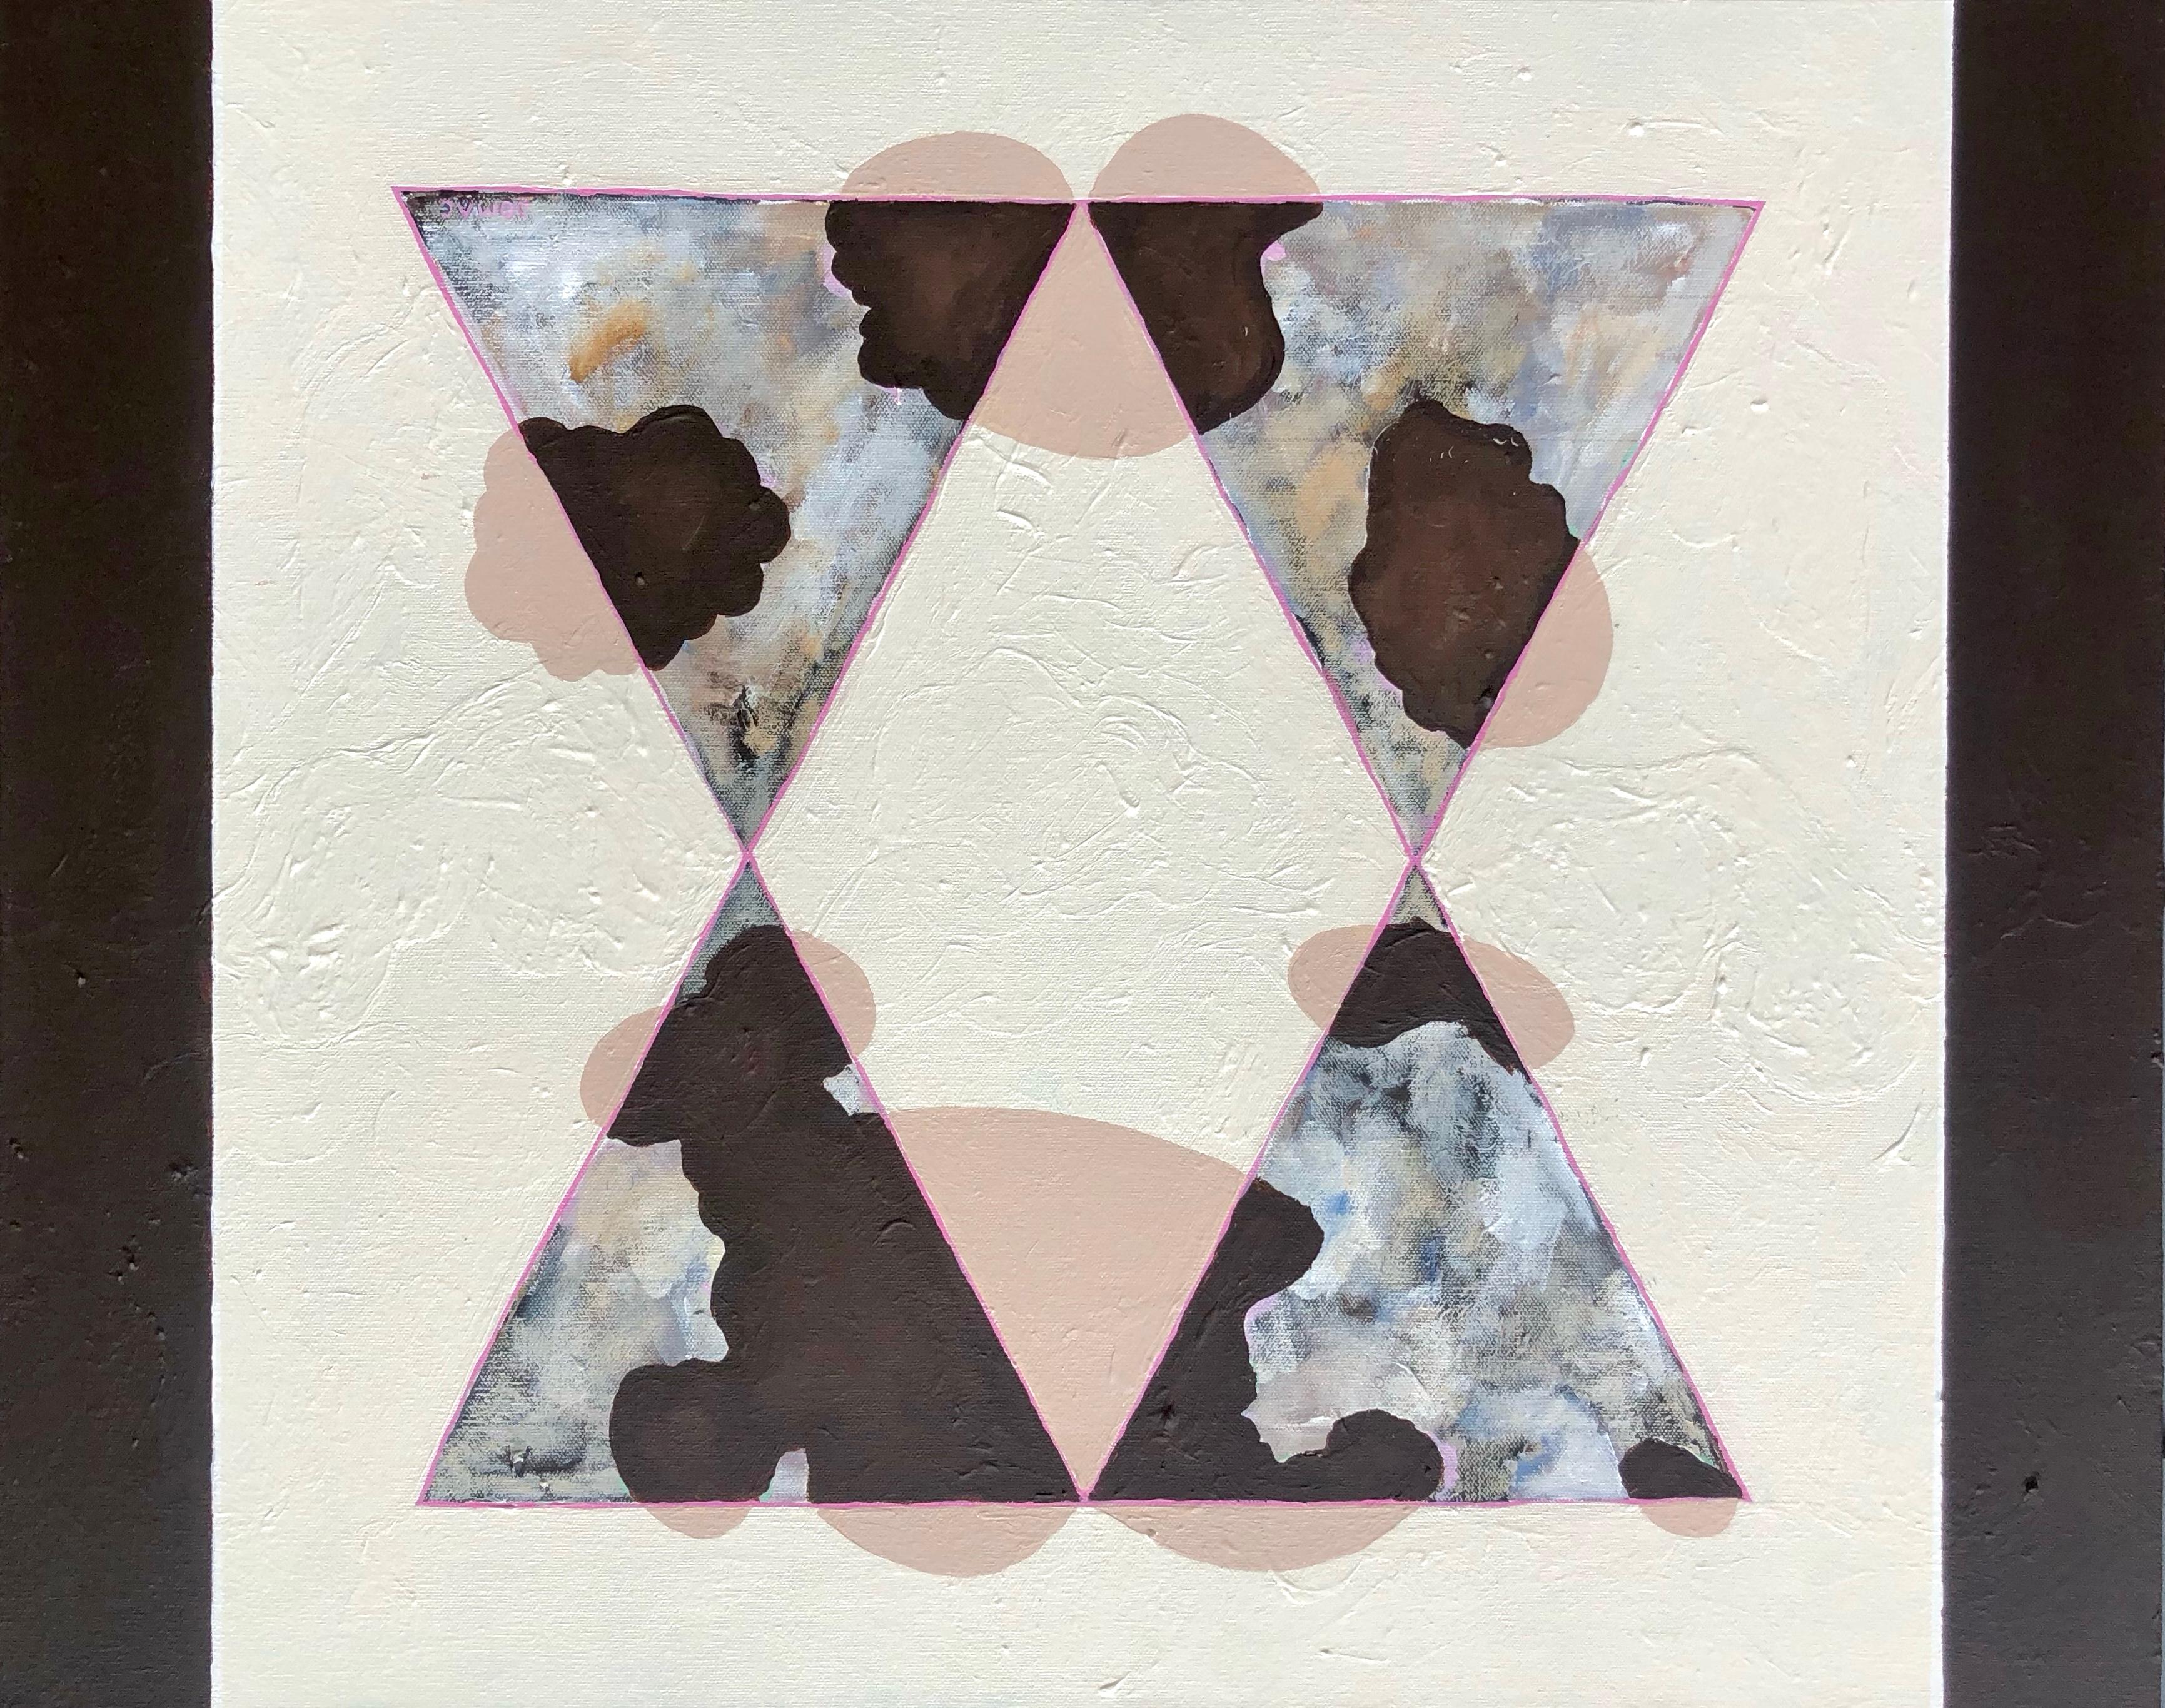 Abstract Painting Joseph McAleer - AM Contemporary : peinture contemporaine avec des formations nuageuses abstraites et des formes géométriques.